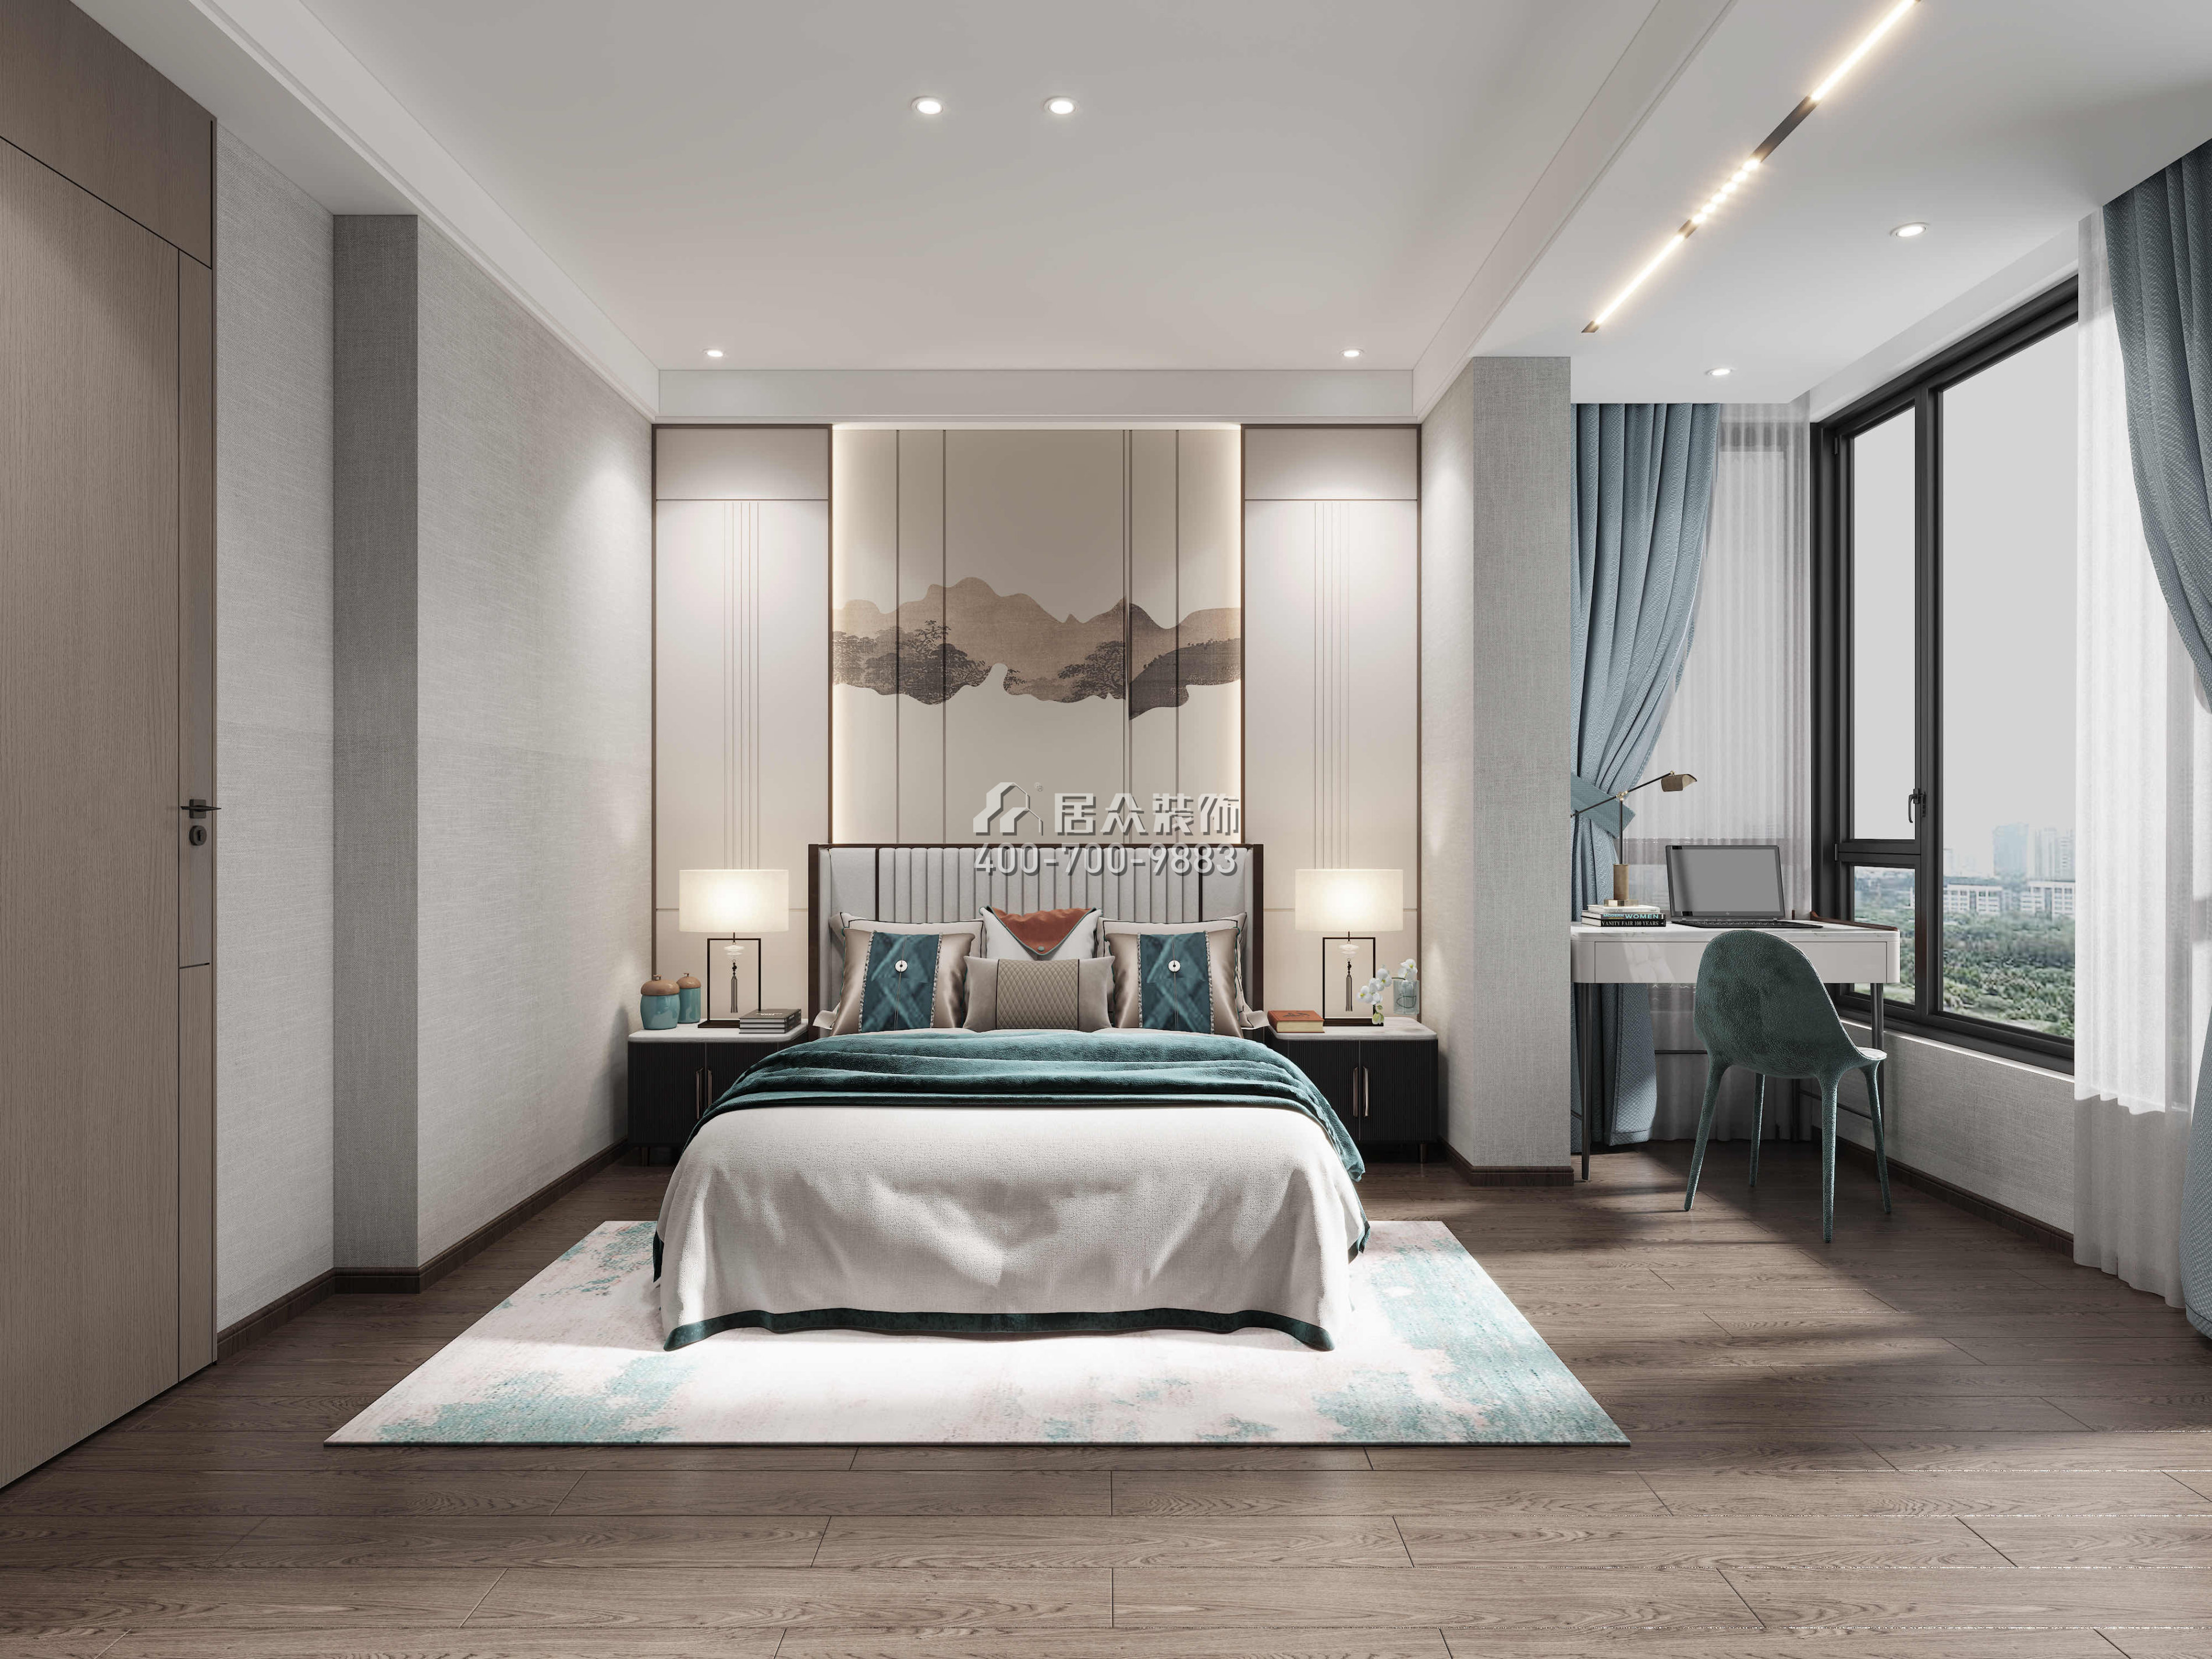 宝利豪庭500平方米中式风格复式户型卧室装修效果图